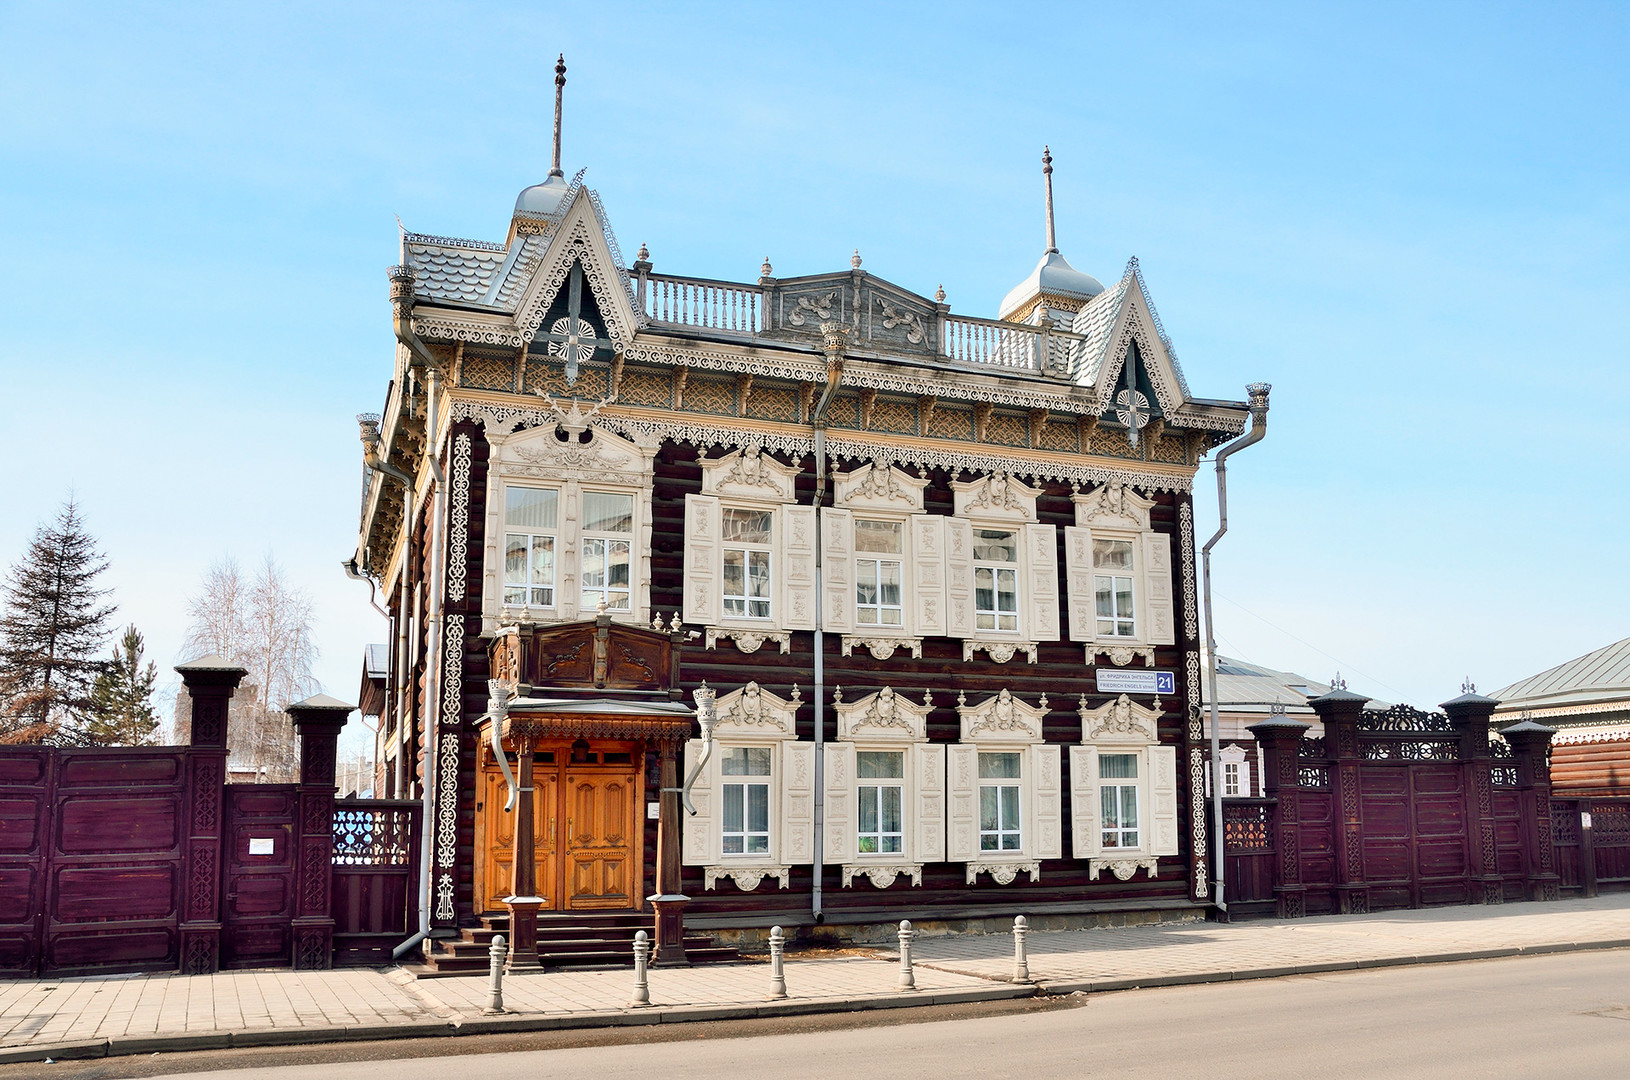 The Europe House (Shastin's House) in Irkutsk.